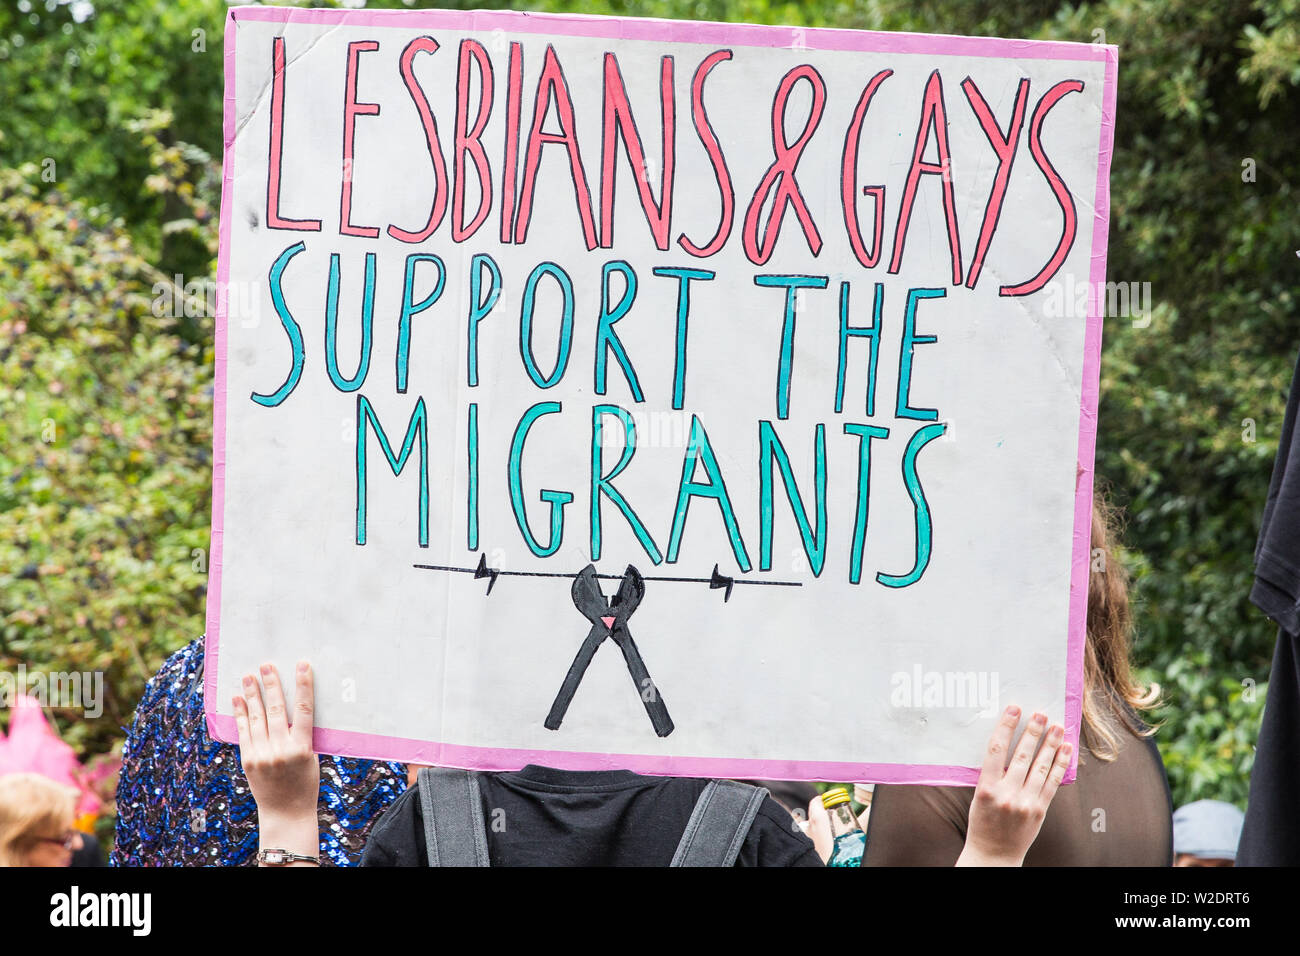 Londres, Royaume-Uni. 6 juillet, 2019. Des militants de Gays et Lesbiennes, soutenir les migrants et autres groupes LGBT + se préparent à prendre part à un London Pride Solidari Banque D'Images